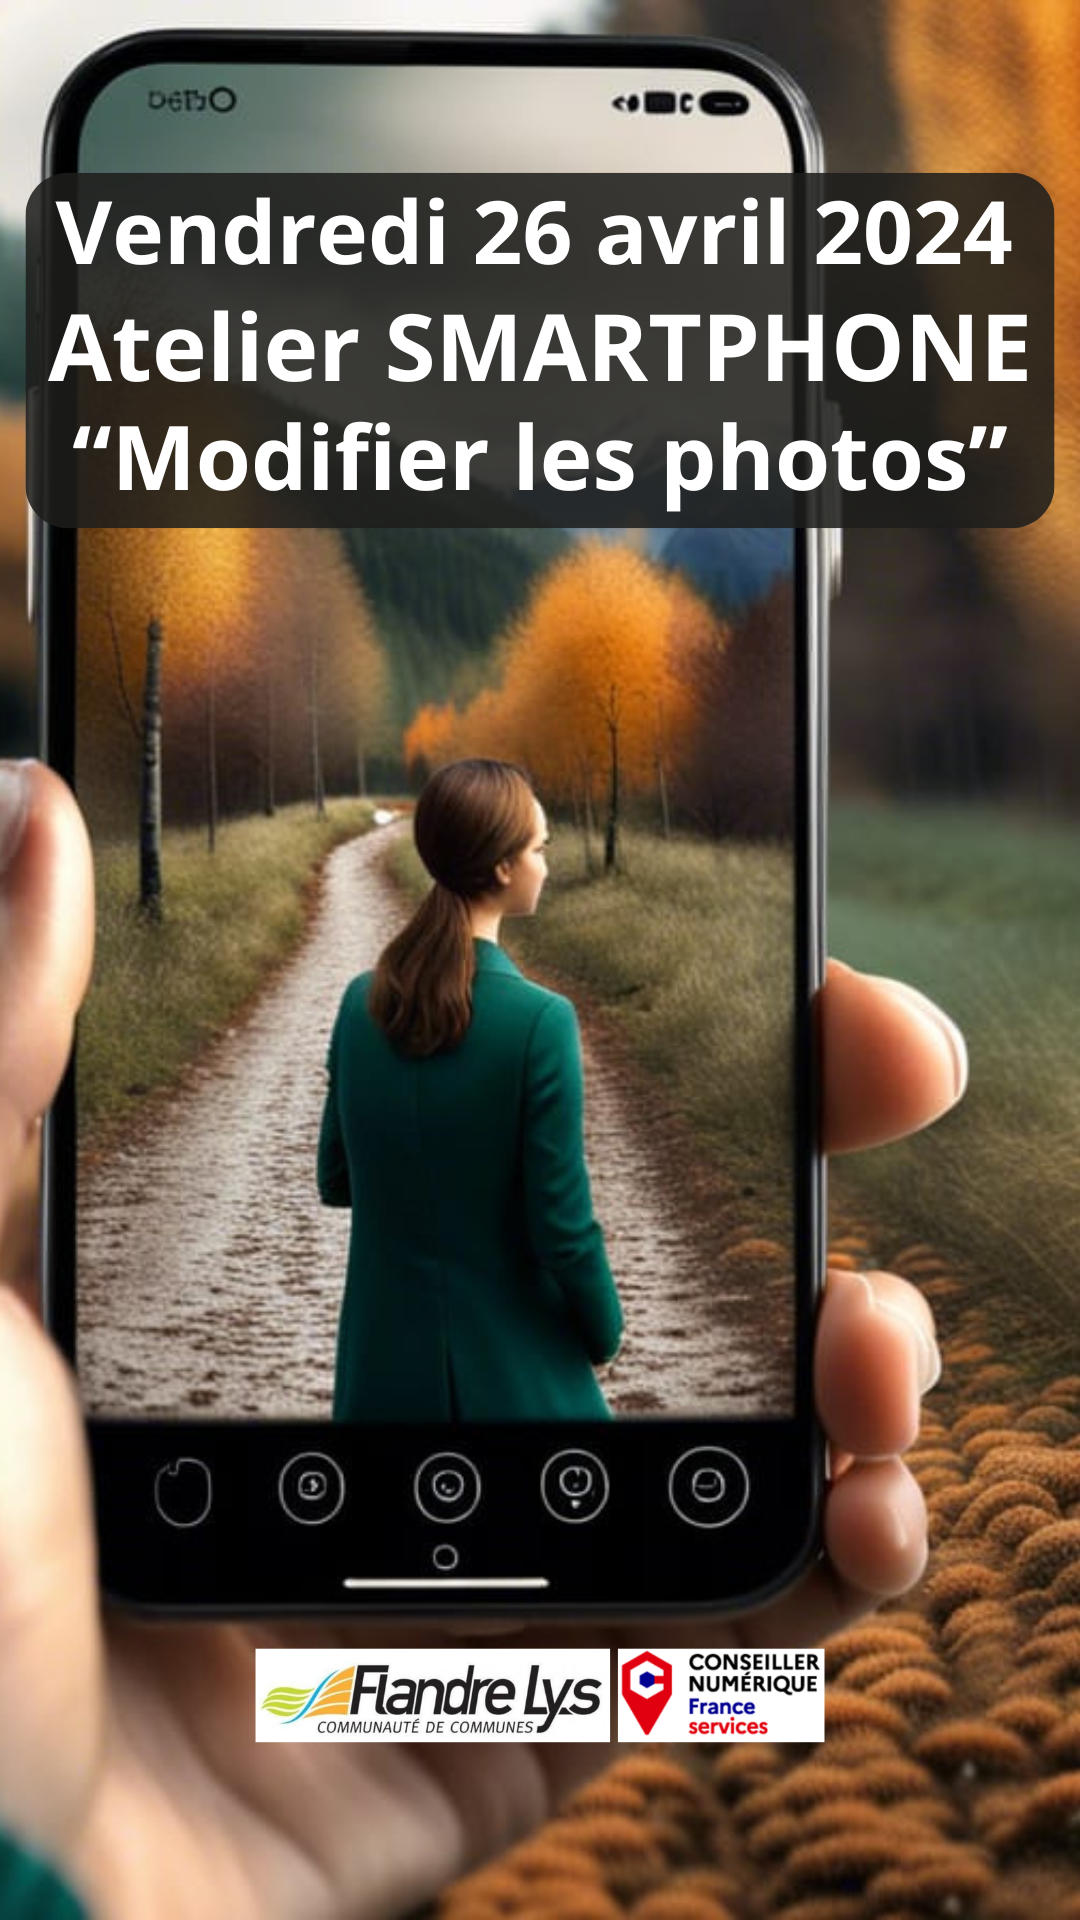 ATELIER SMARTPHONE "Modifier les photos"